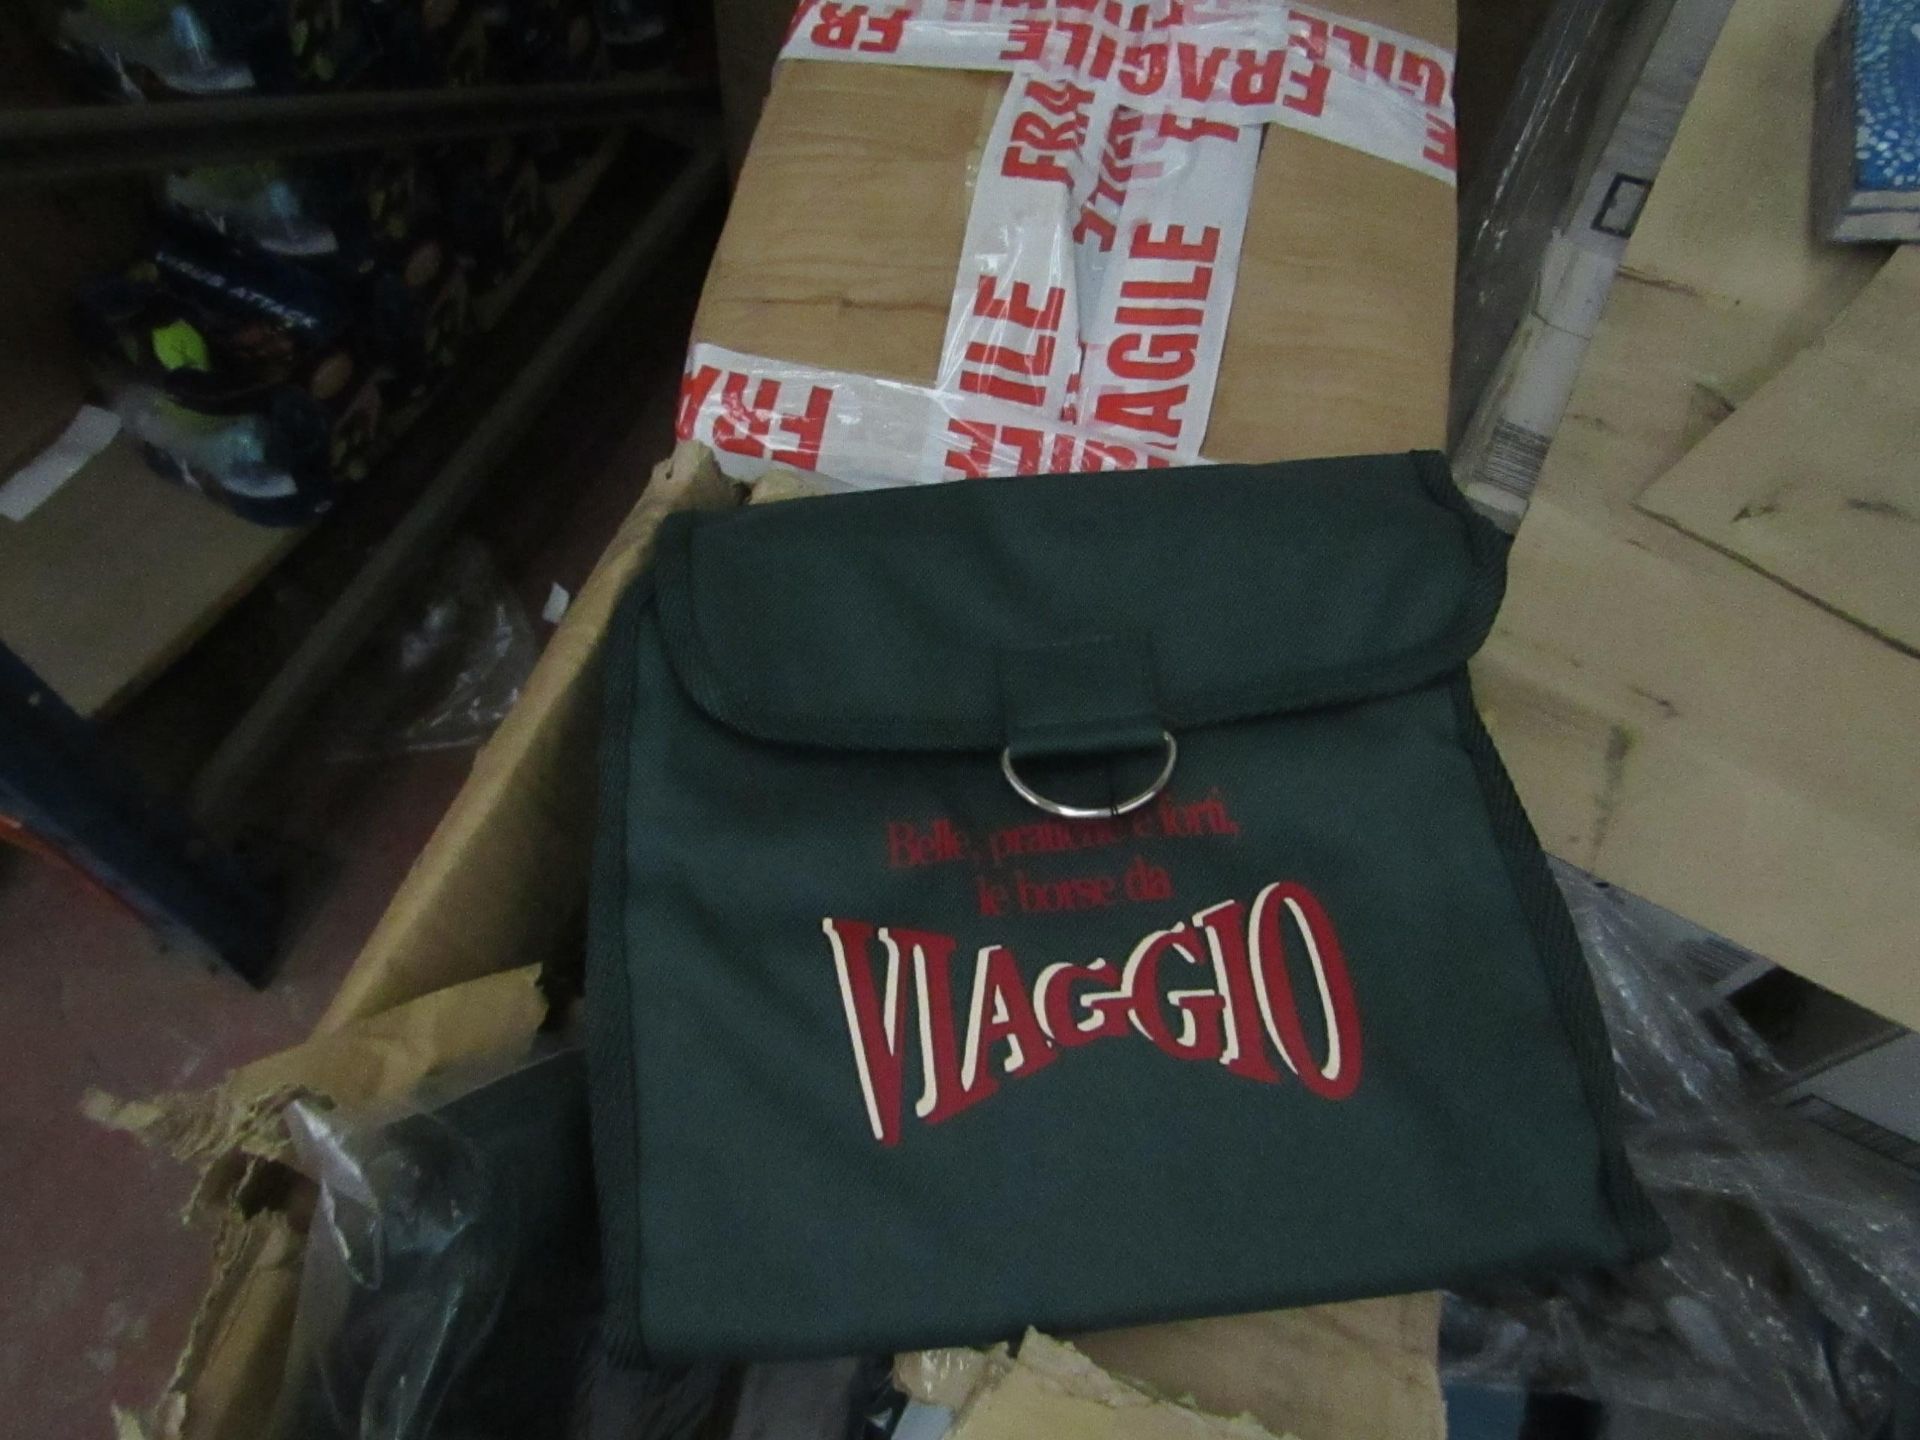 5x Viaggio - Green Portable Wash Bag - Unused With Original Tags.